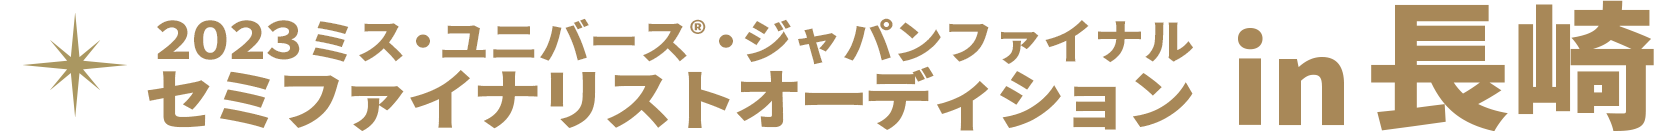 2023 ミス・ユニバース®︎ ジャパン ファイナル〜セミファイナリストオーディション in 長崎〜